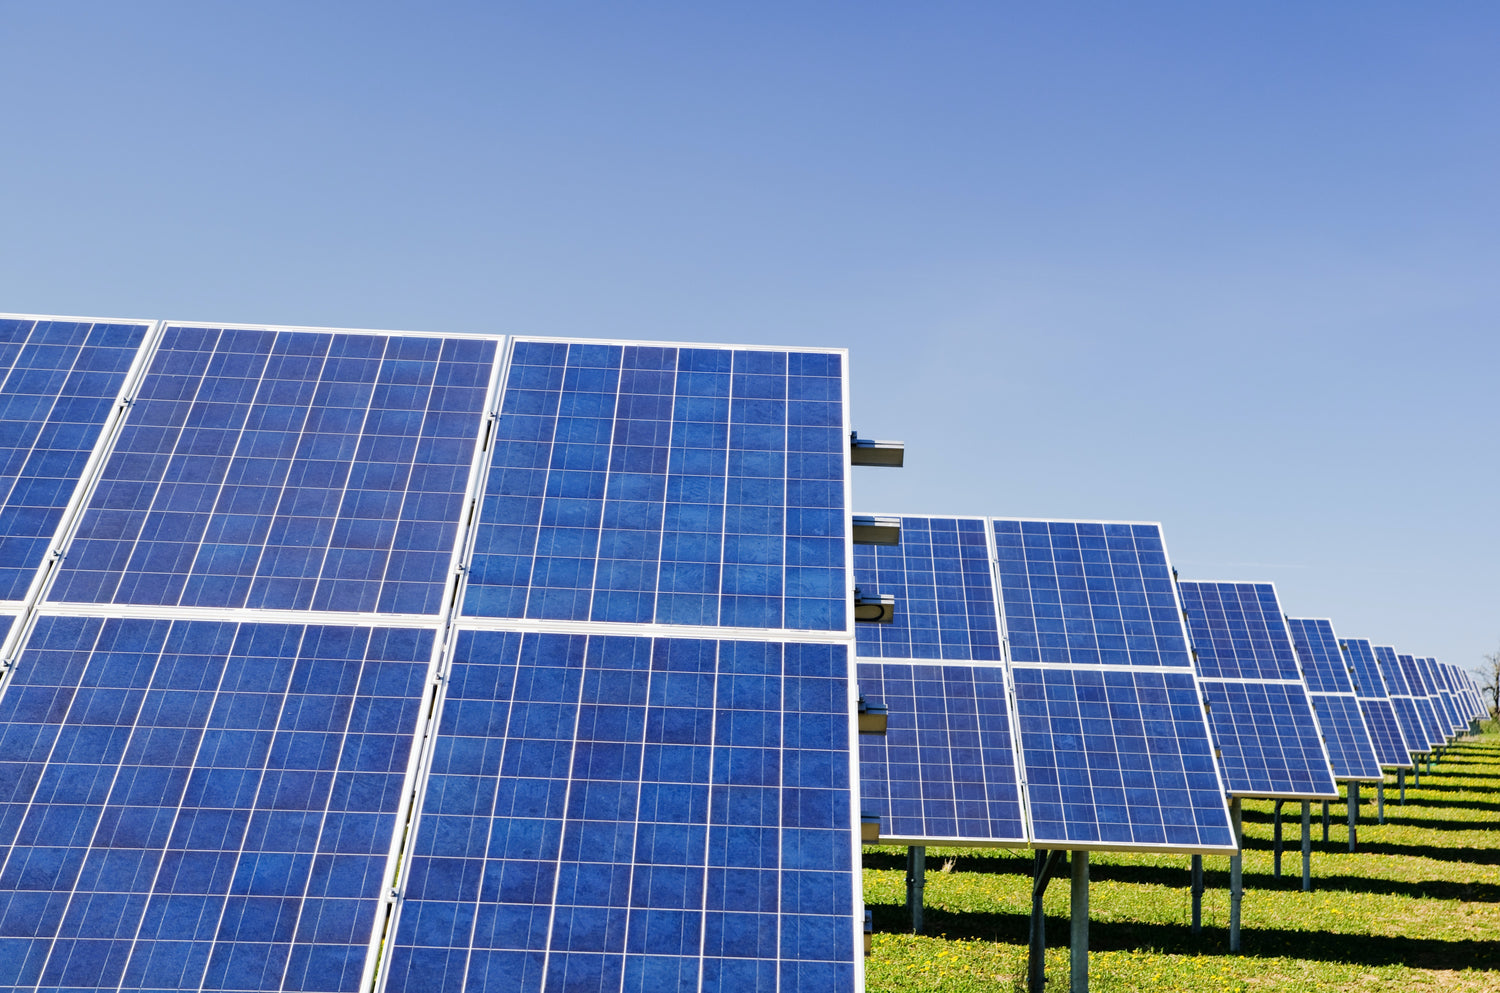 Las mejores ofertas en Los paneles solares portátiles Solar y kits